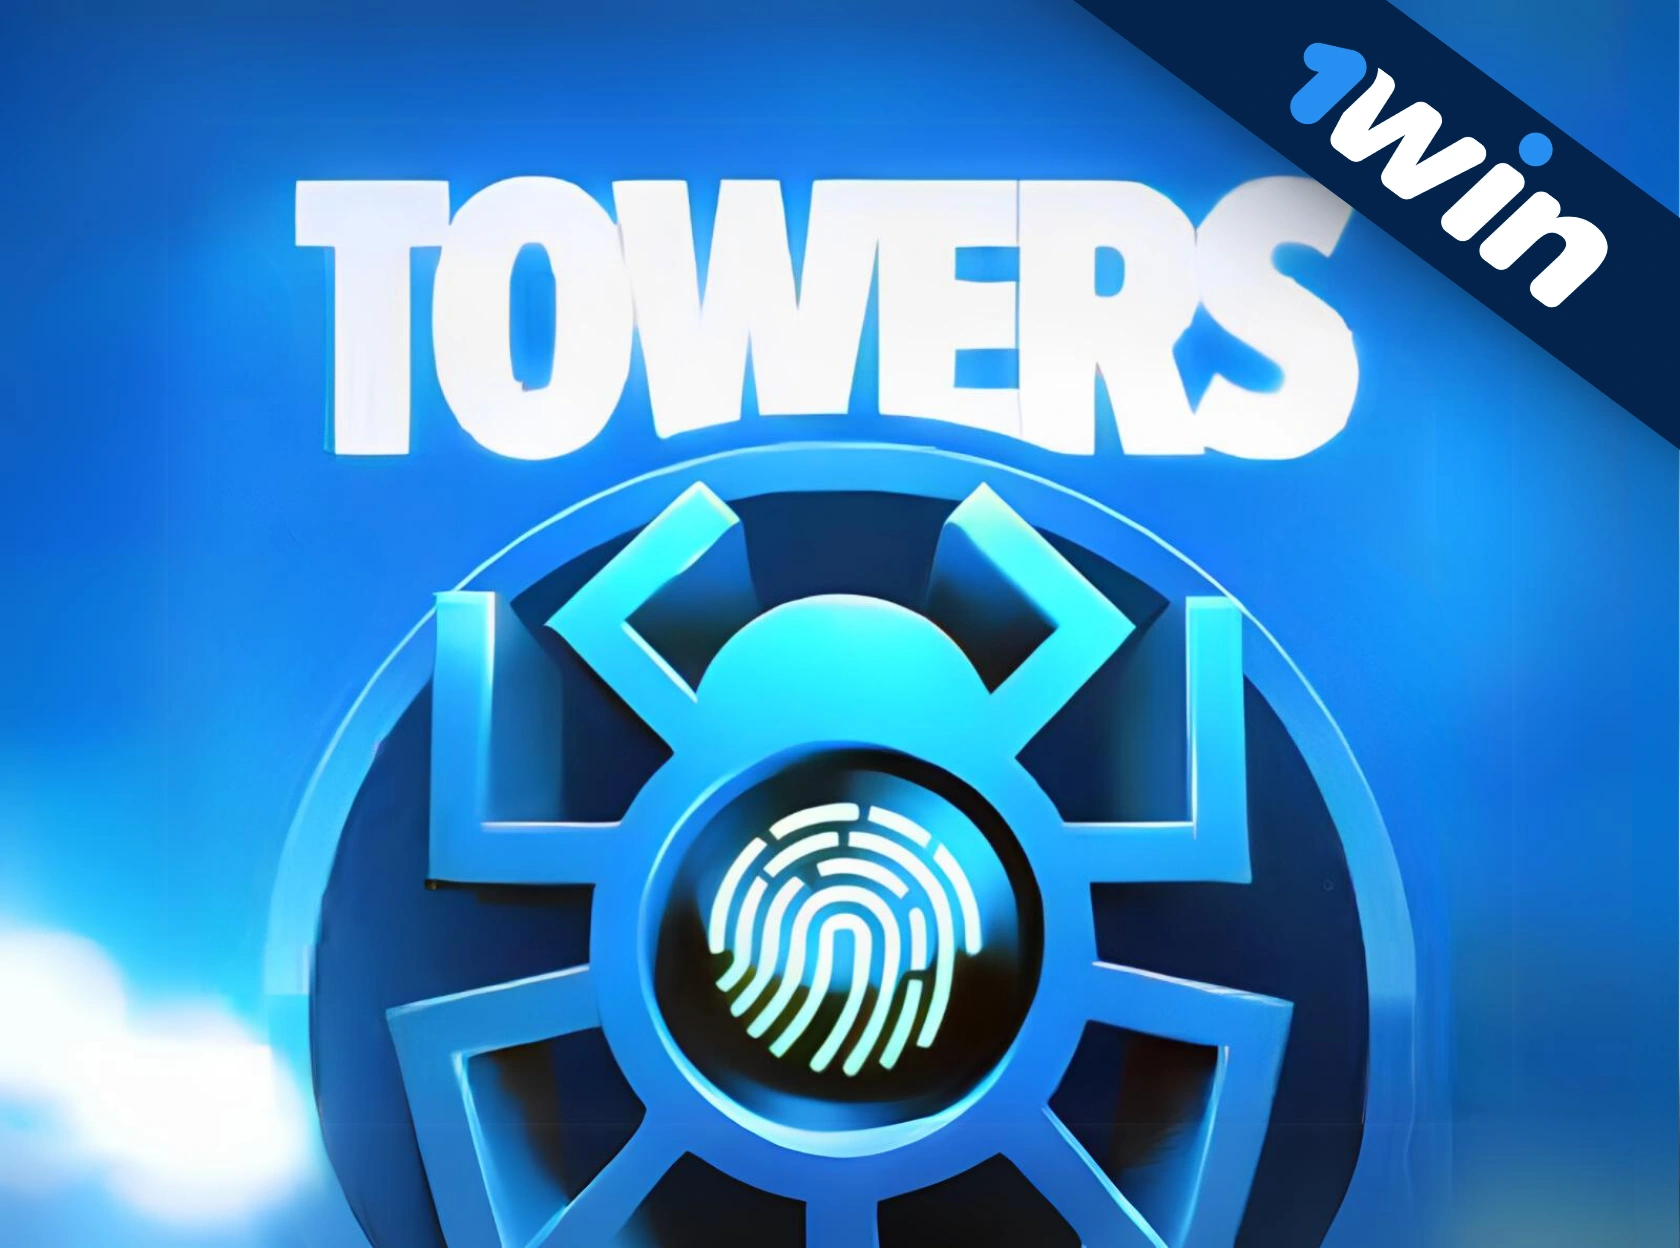 Towers 1win - жаңа эксклюзивті ойын!